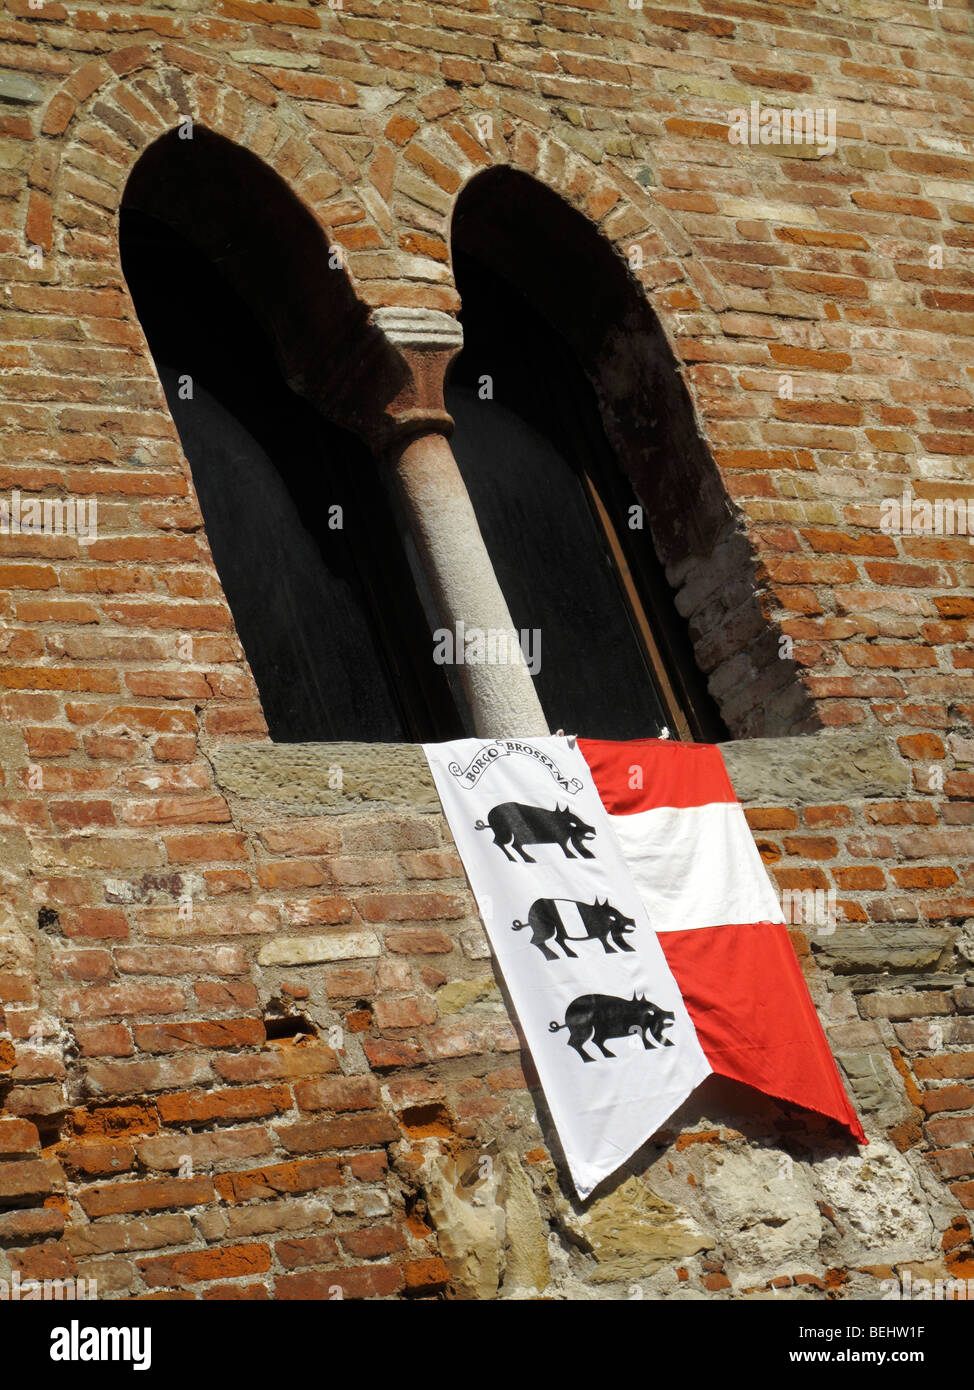 Fenêtre cintrée avec un drapeau accroché en dessous contrade Cividale del Fruili dans le nord de l'Italie Banque D'Images